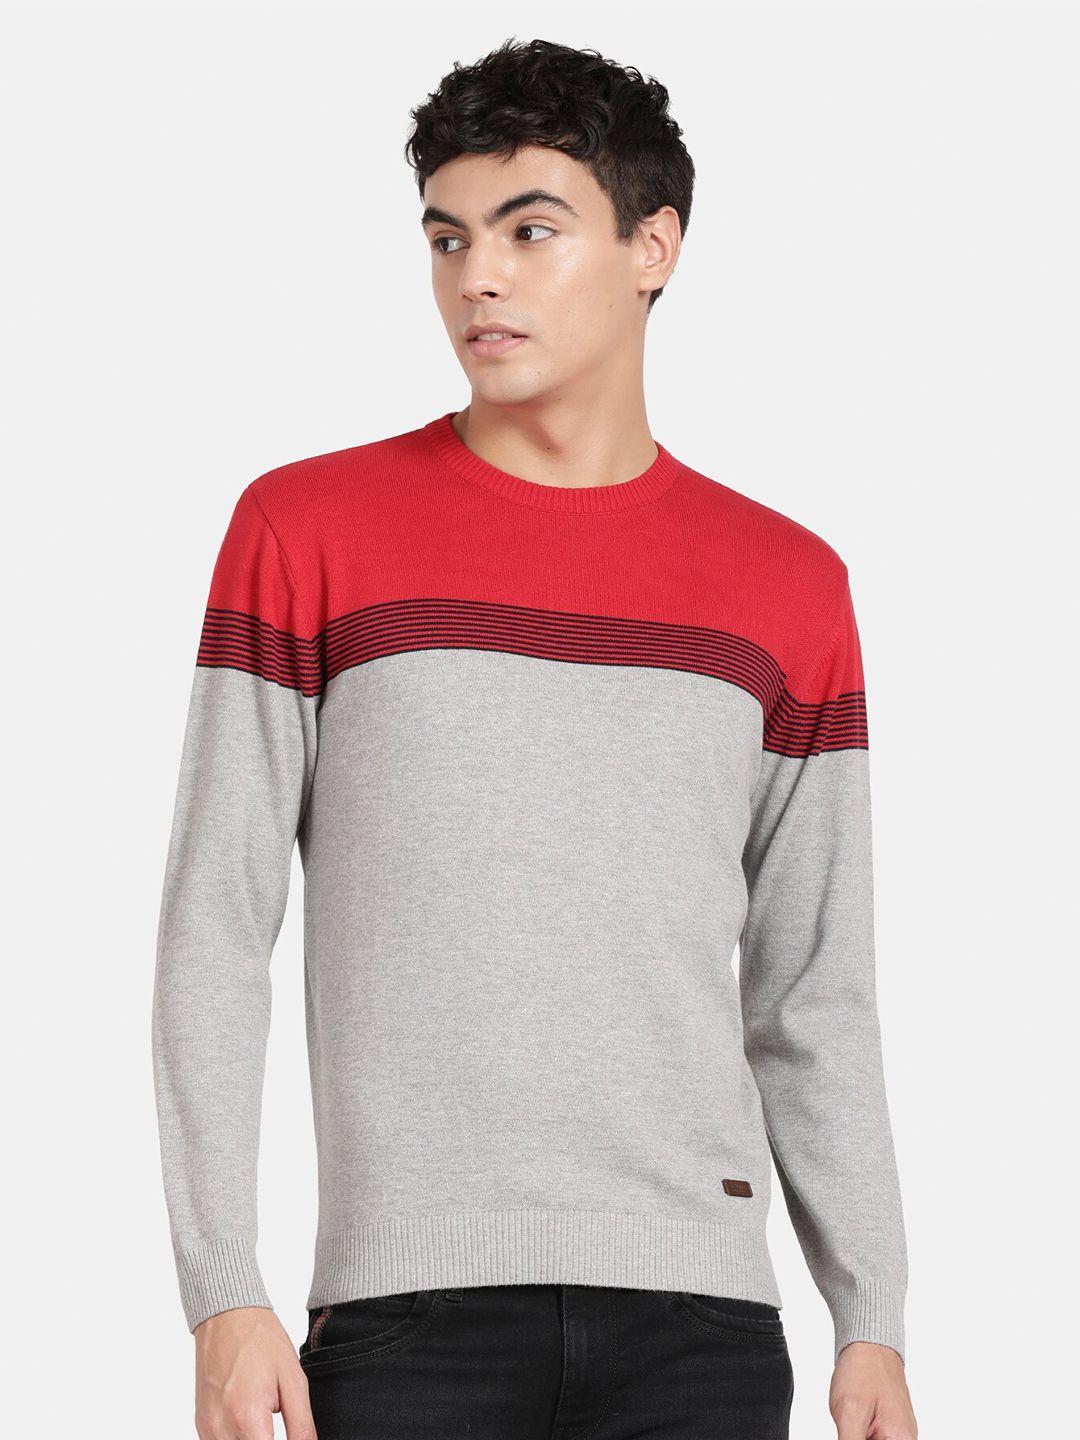 t-base-colourblocked-cotton-pullover-sweatshirt